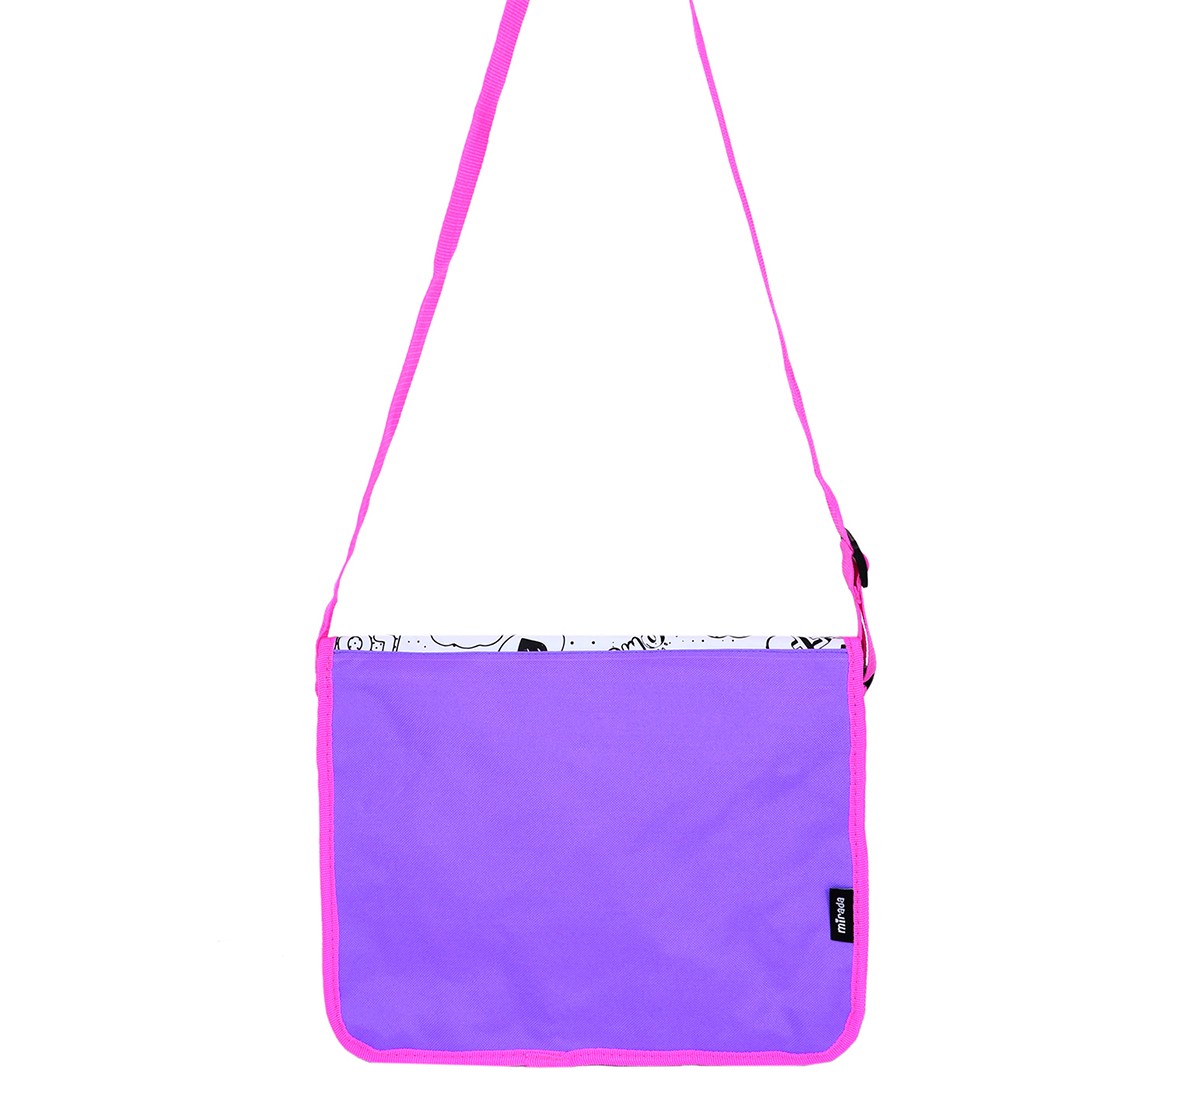 Mirada Color Your Own Lol Shoulder Bag, 3Y+, Multicolour